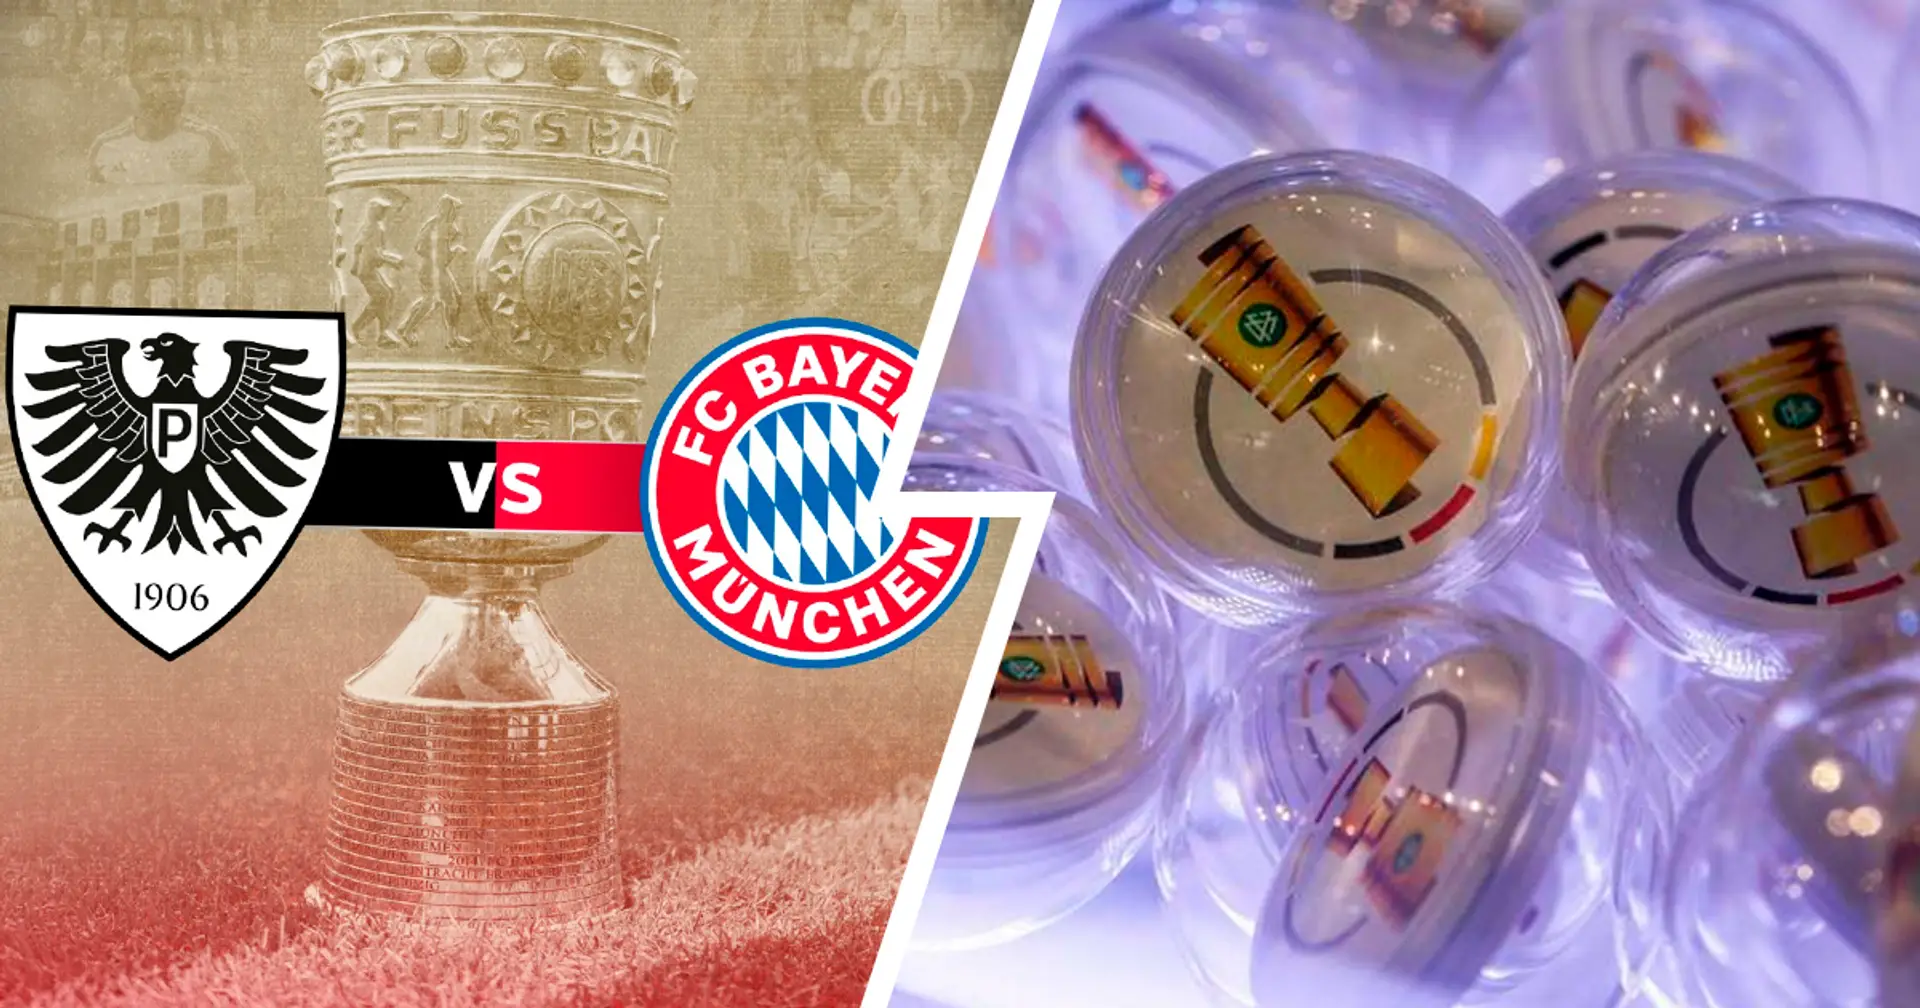 OFFIZIELL: Bayern trifft auf den Drittligisten Preußen Münster in der ersten Runde des DFB-Pokals